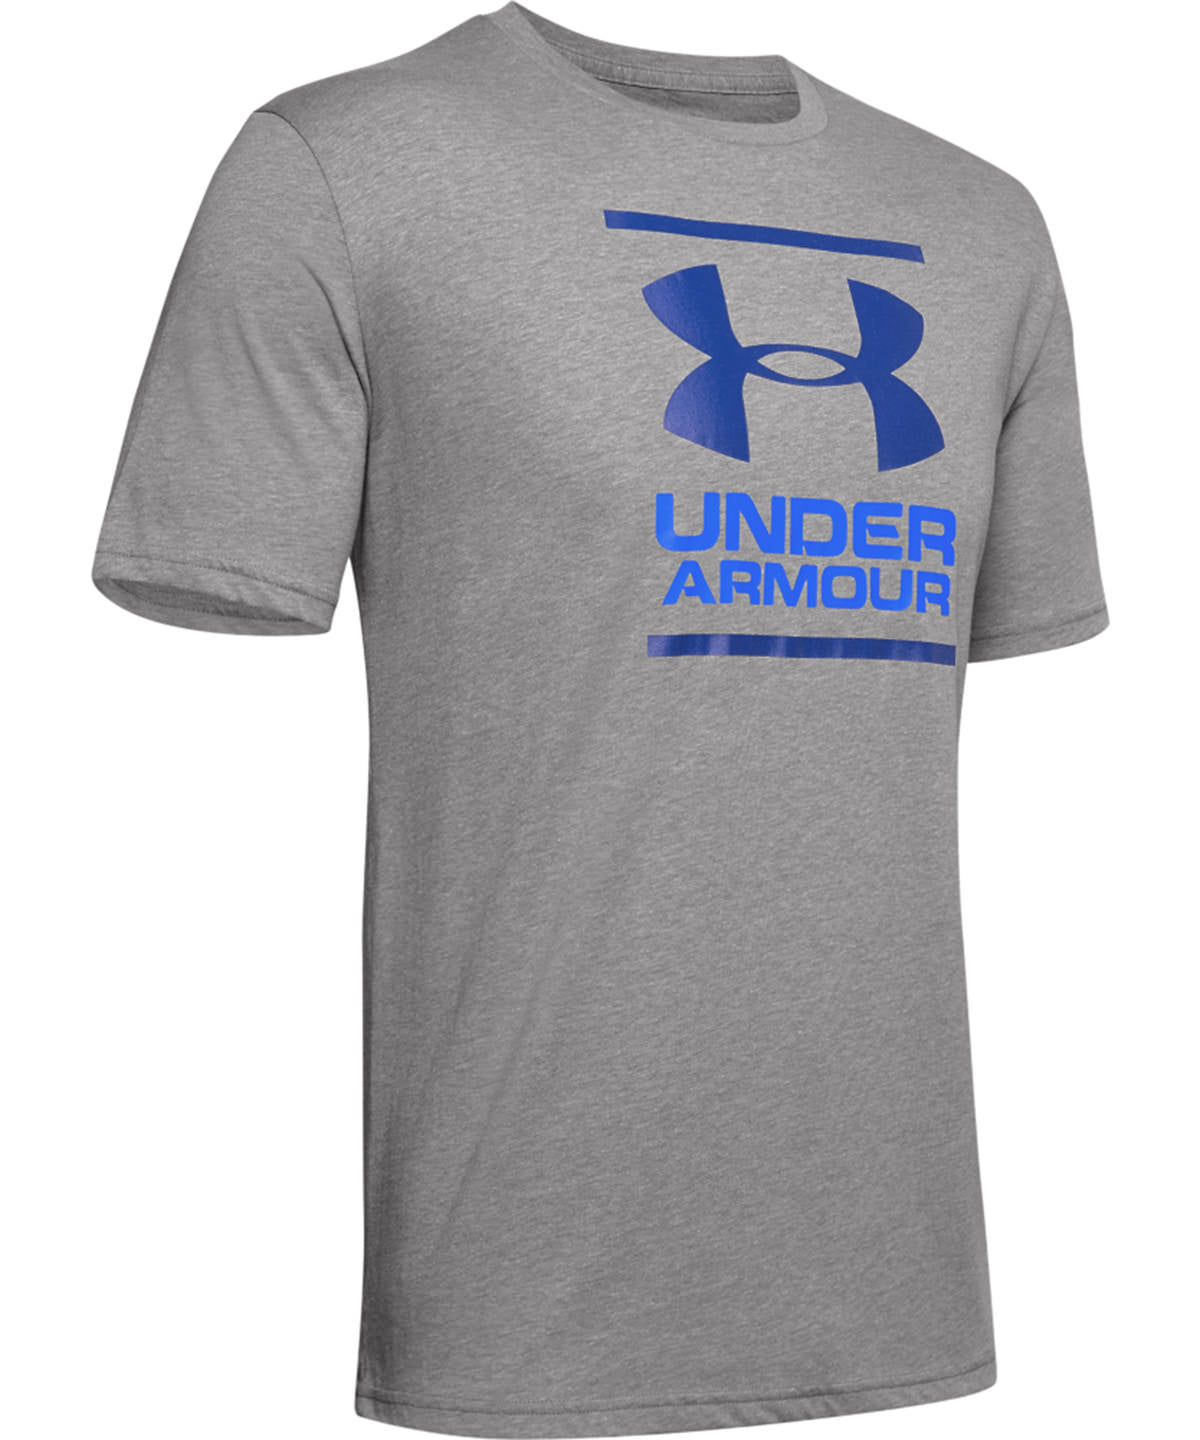 Stuttermabolir - UA Foundation Short Sleeve T-shirt